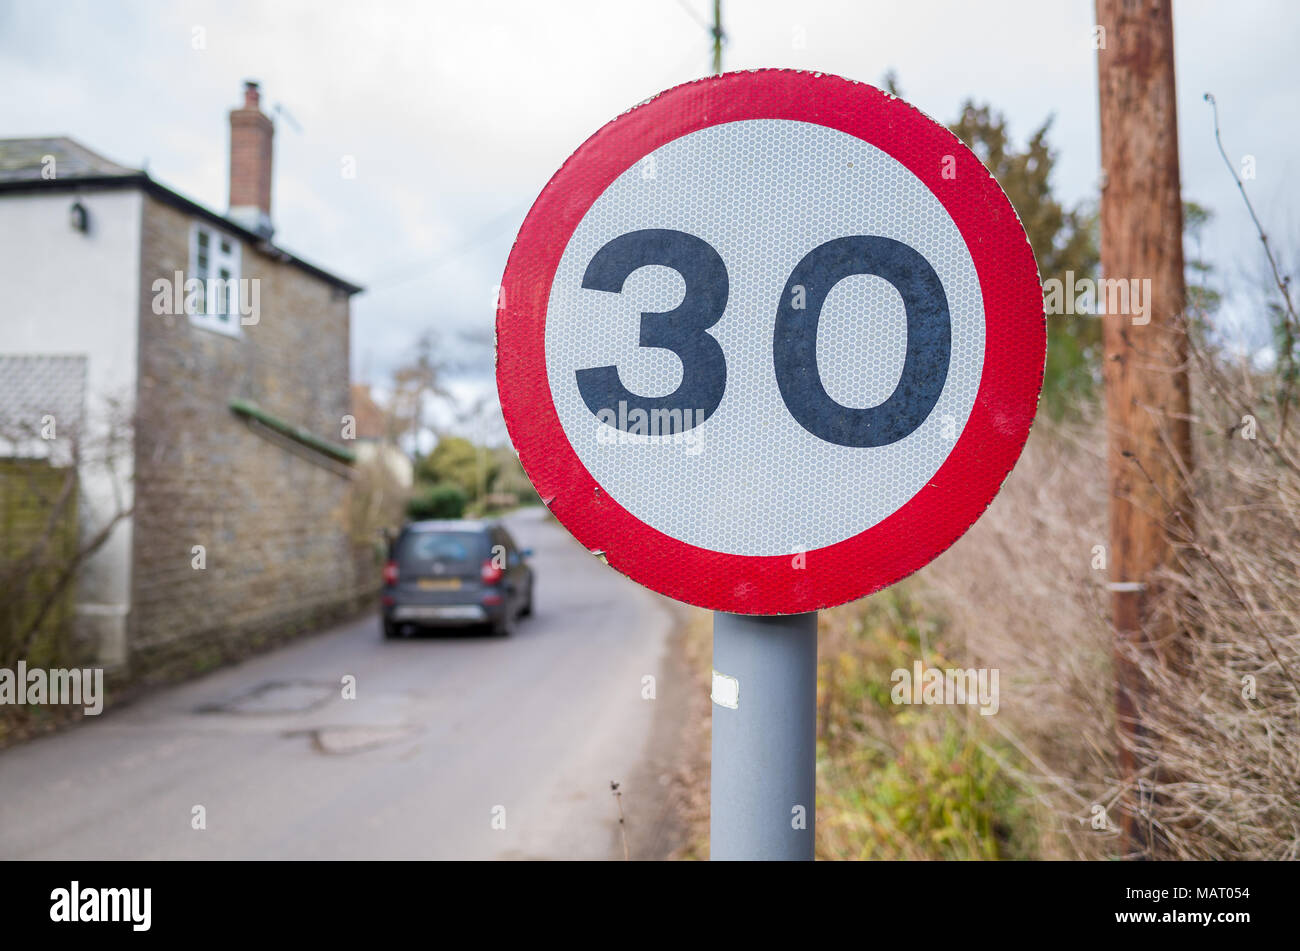 Señal del límite de velocidad de 30 mph en la carretera que atraviesa un país village road,Reino Unido, Dorset Foto de stock